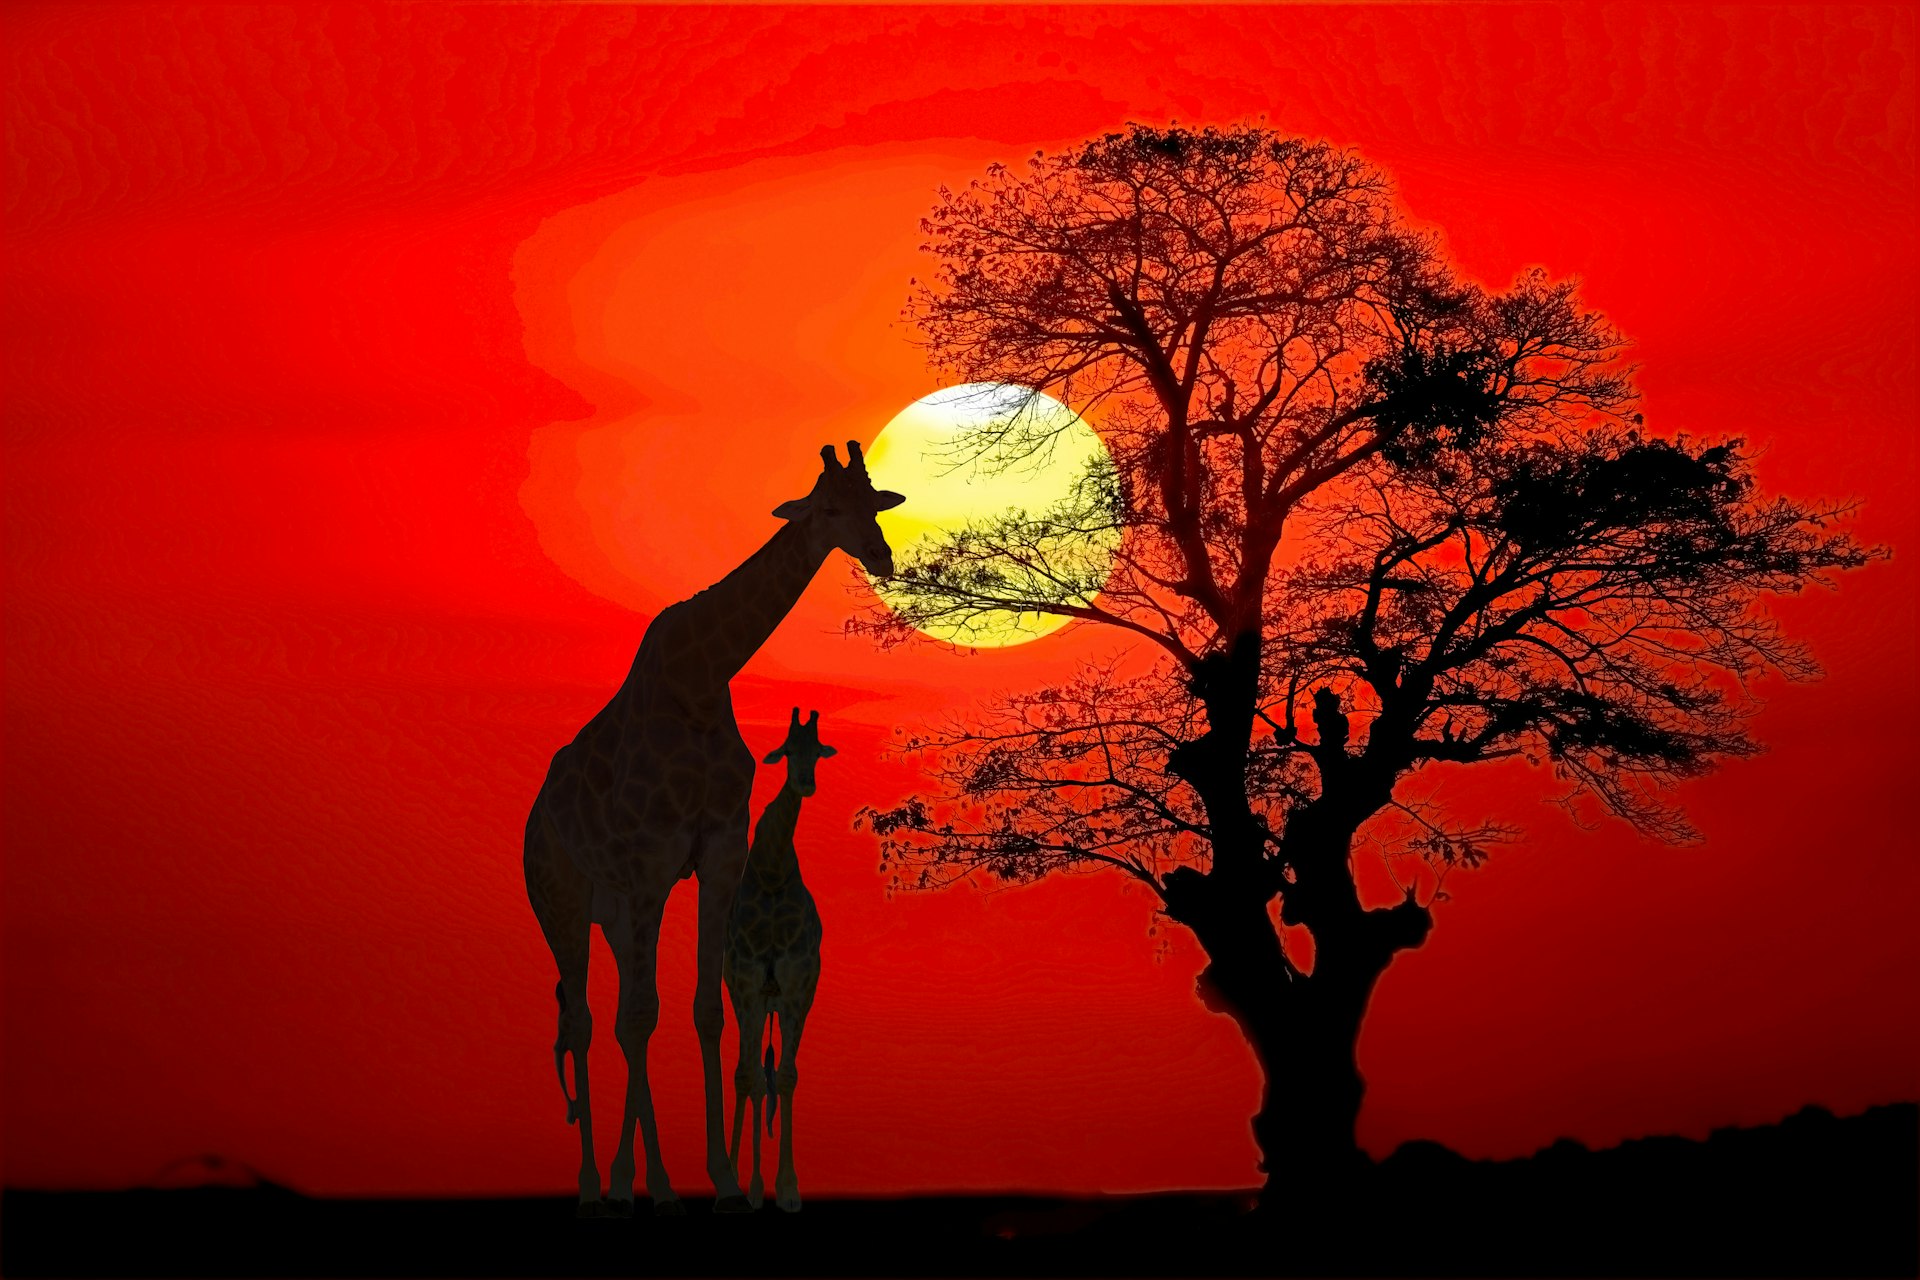 Setting sun with silhouettes of giraffes and trees on safari in Tanzania